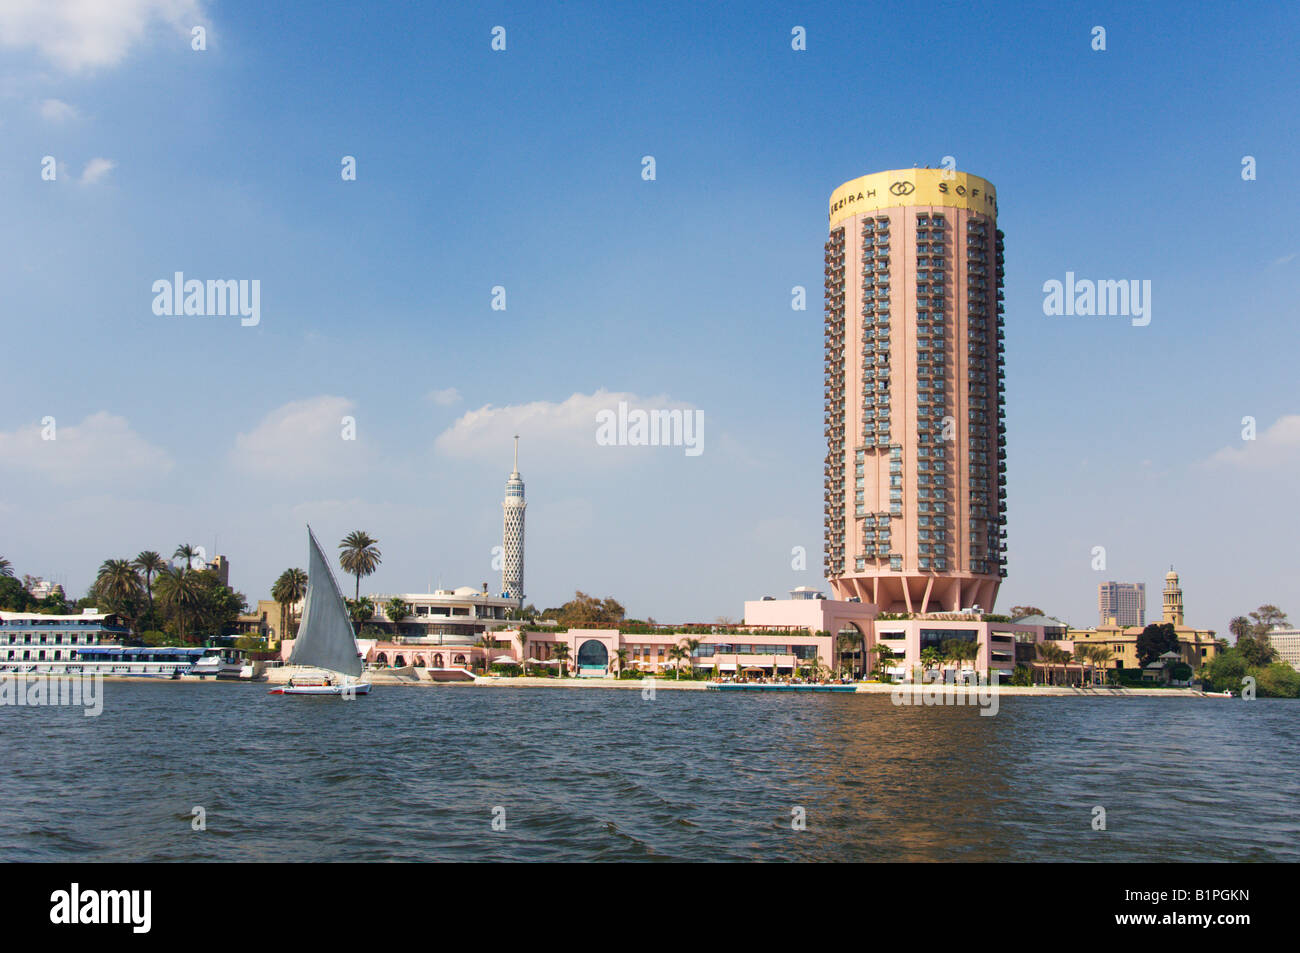 L'hôtel Sofitel et la Tour du Caire avec un voilier felouque sur le Nil au Caire, Egypte Banque D'Images